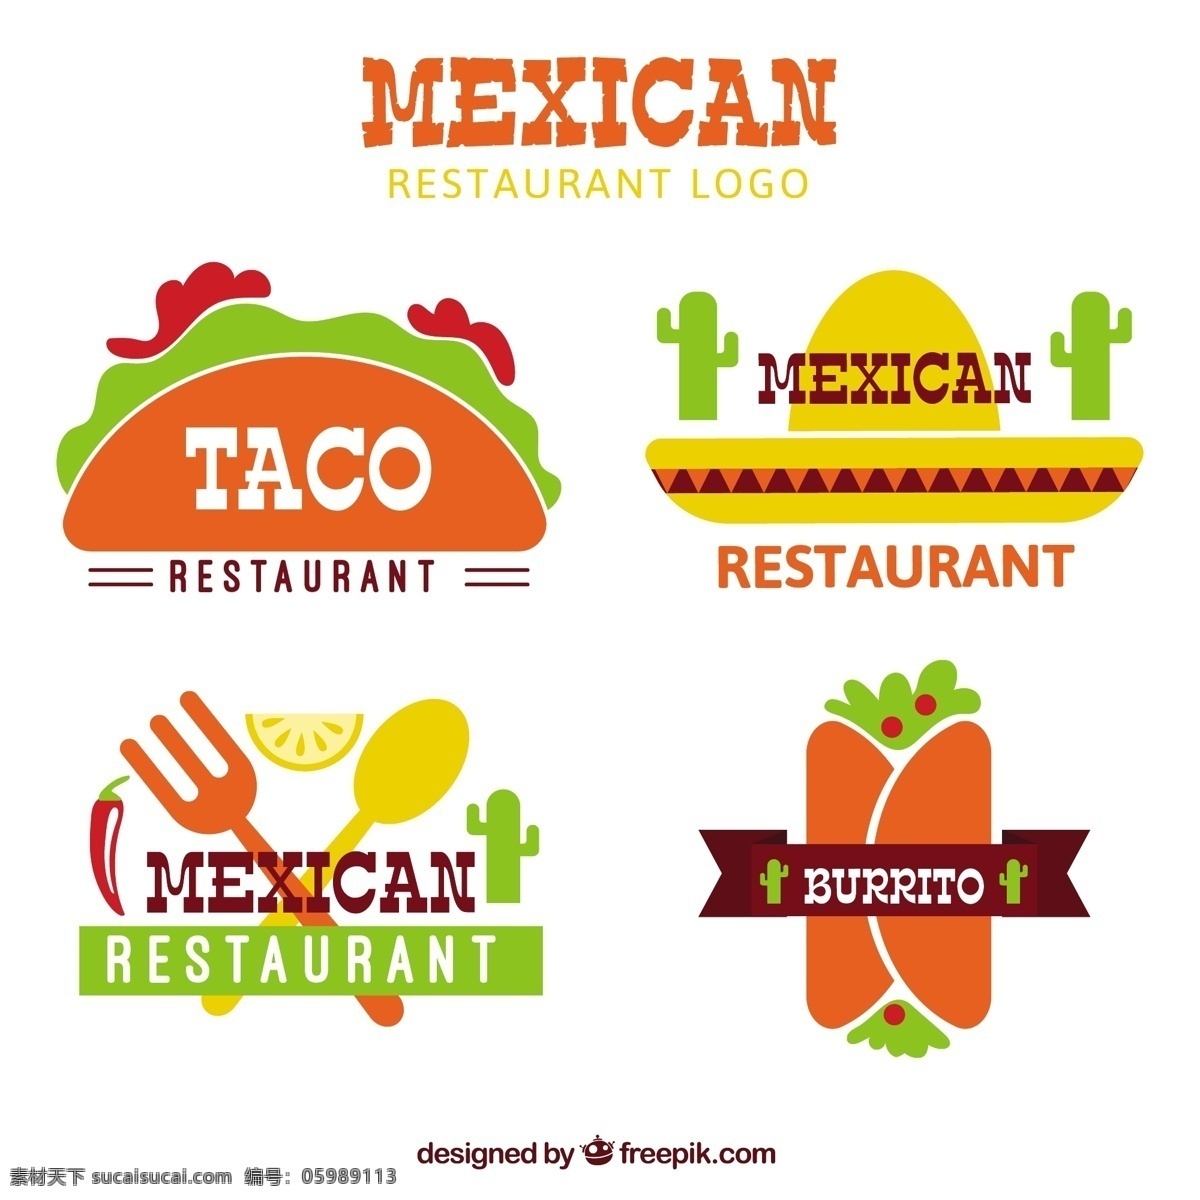 平坦 墨西哥 食品 标志 菜单 餐厅 单位 鸡 企业 公司 品牌 餐厅菜单 蔬菜 企业身份 食品标志 餐厅标志 吃 番茄 符号 食品菜单